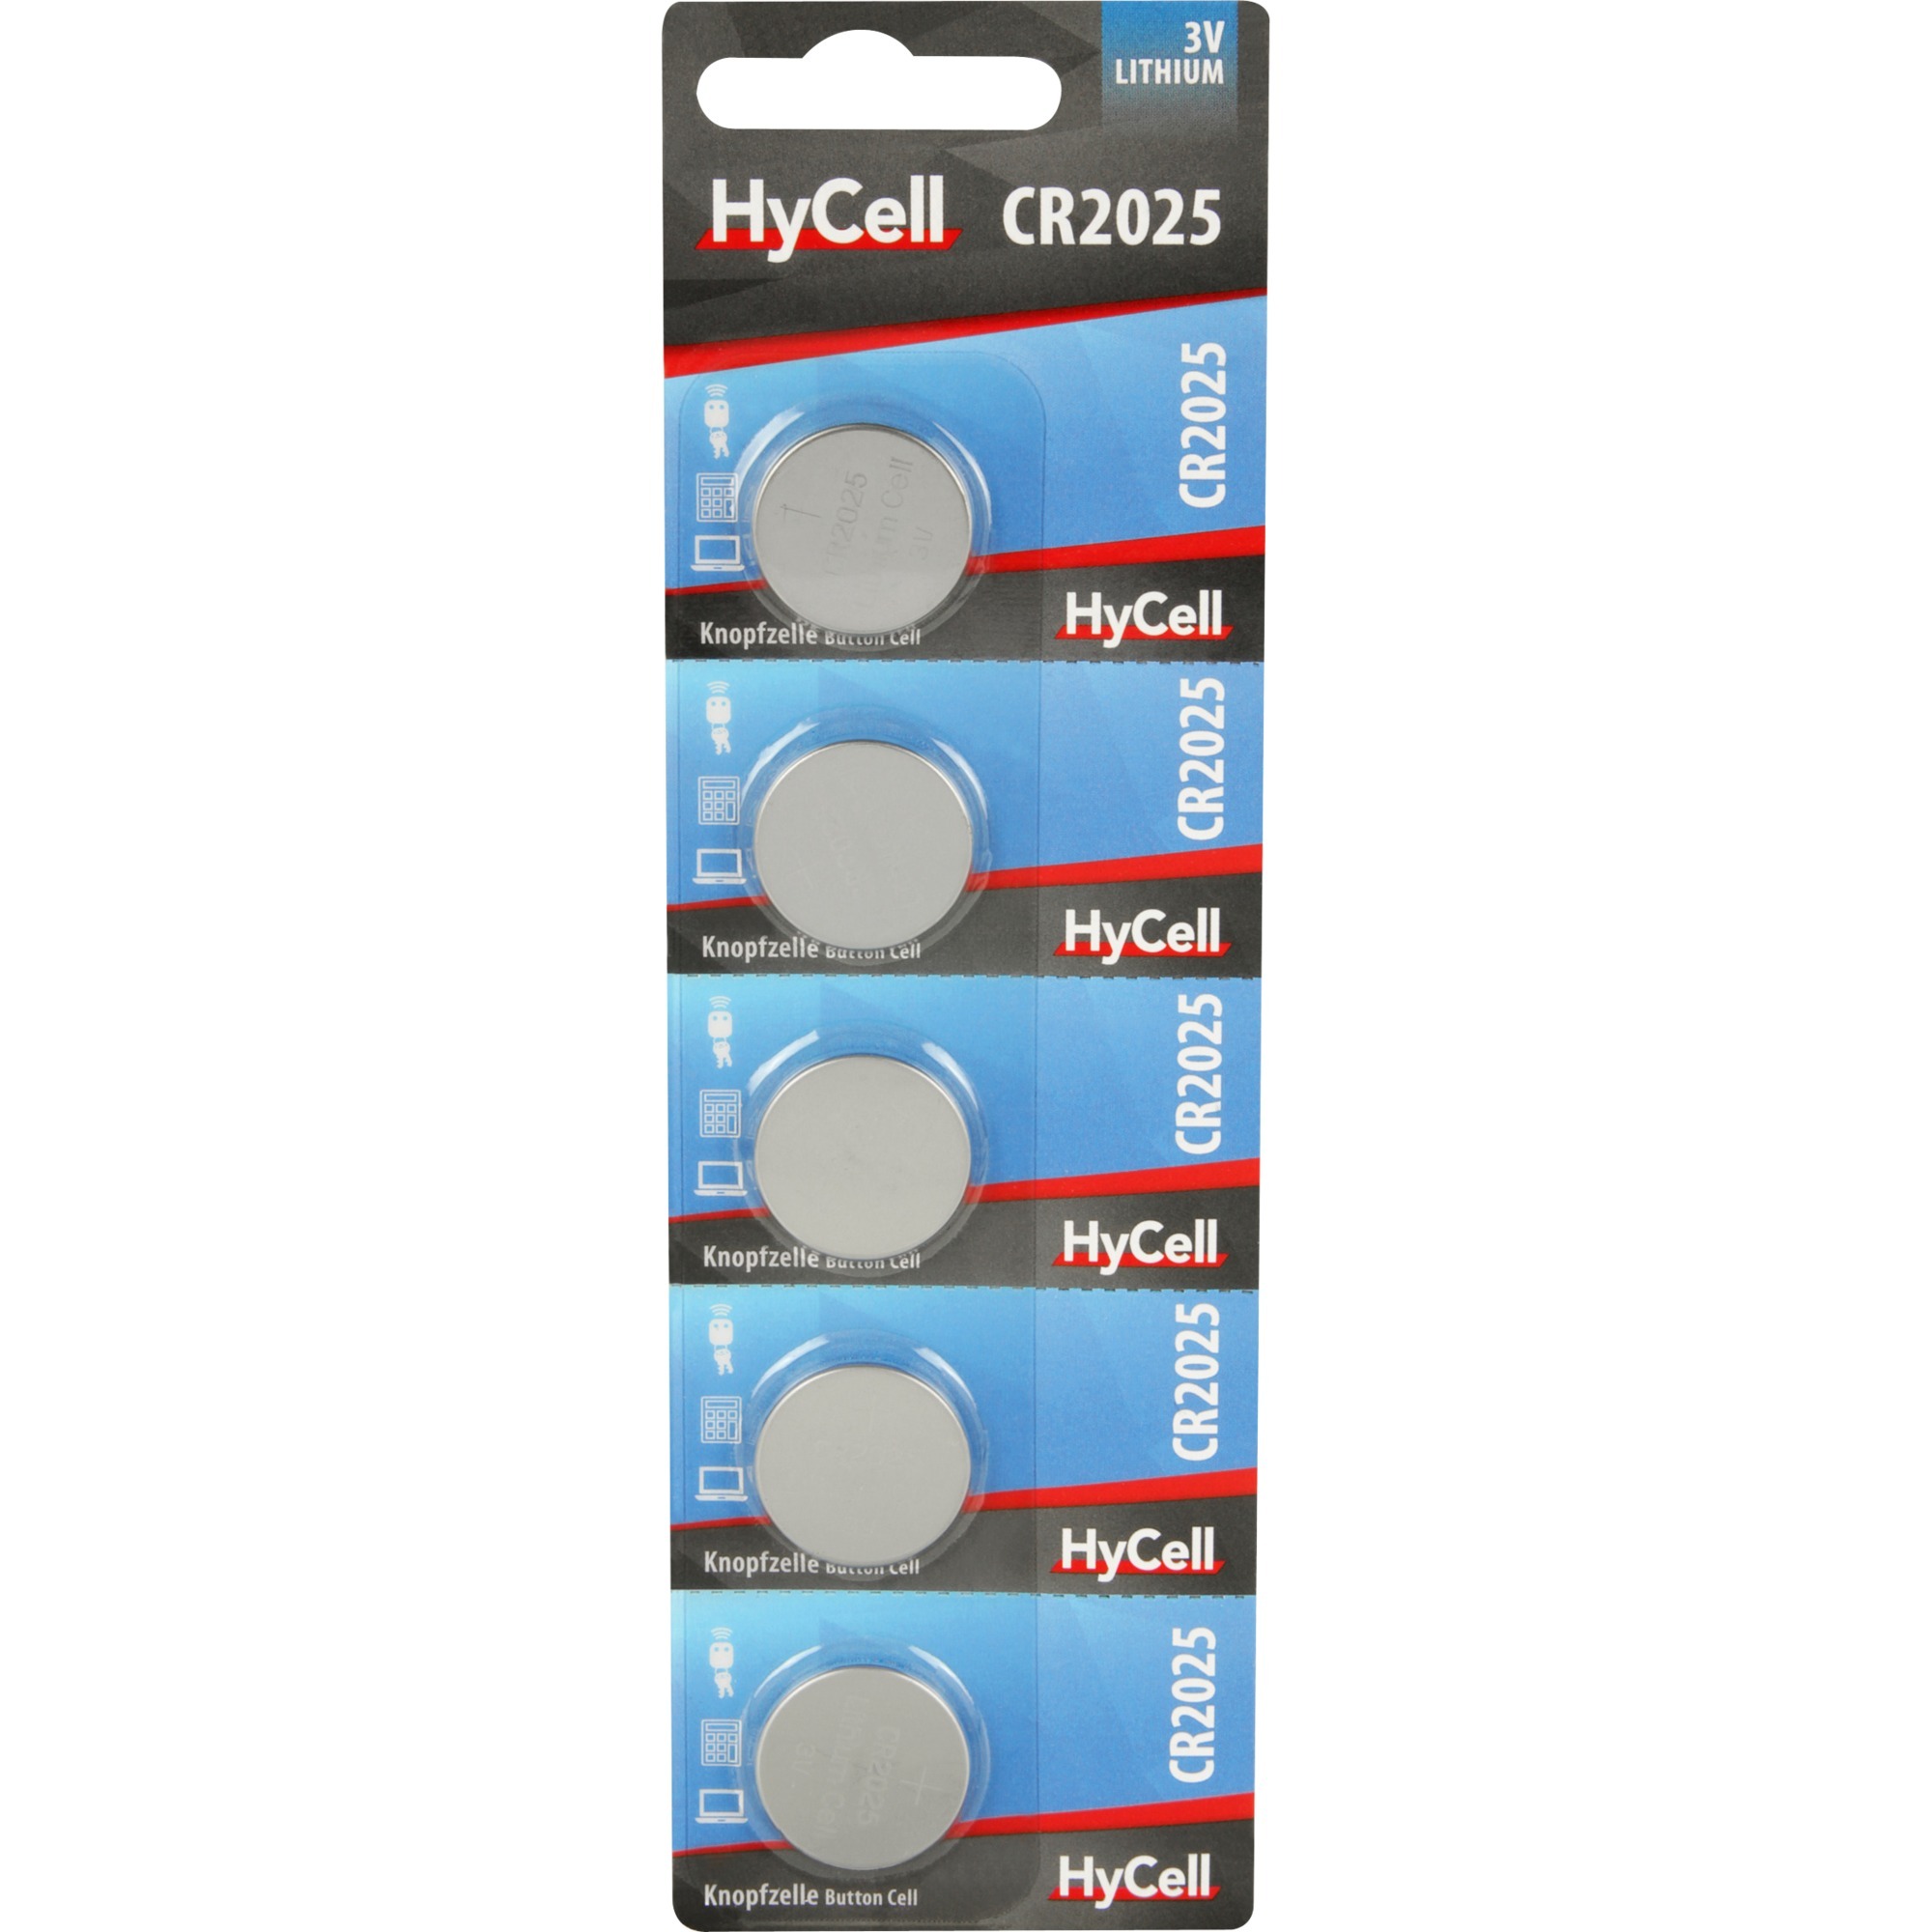 Image of Alternate - Lithium Knopfzellen CR2025, Batterie online einkaufen bei Alternate